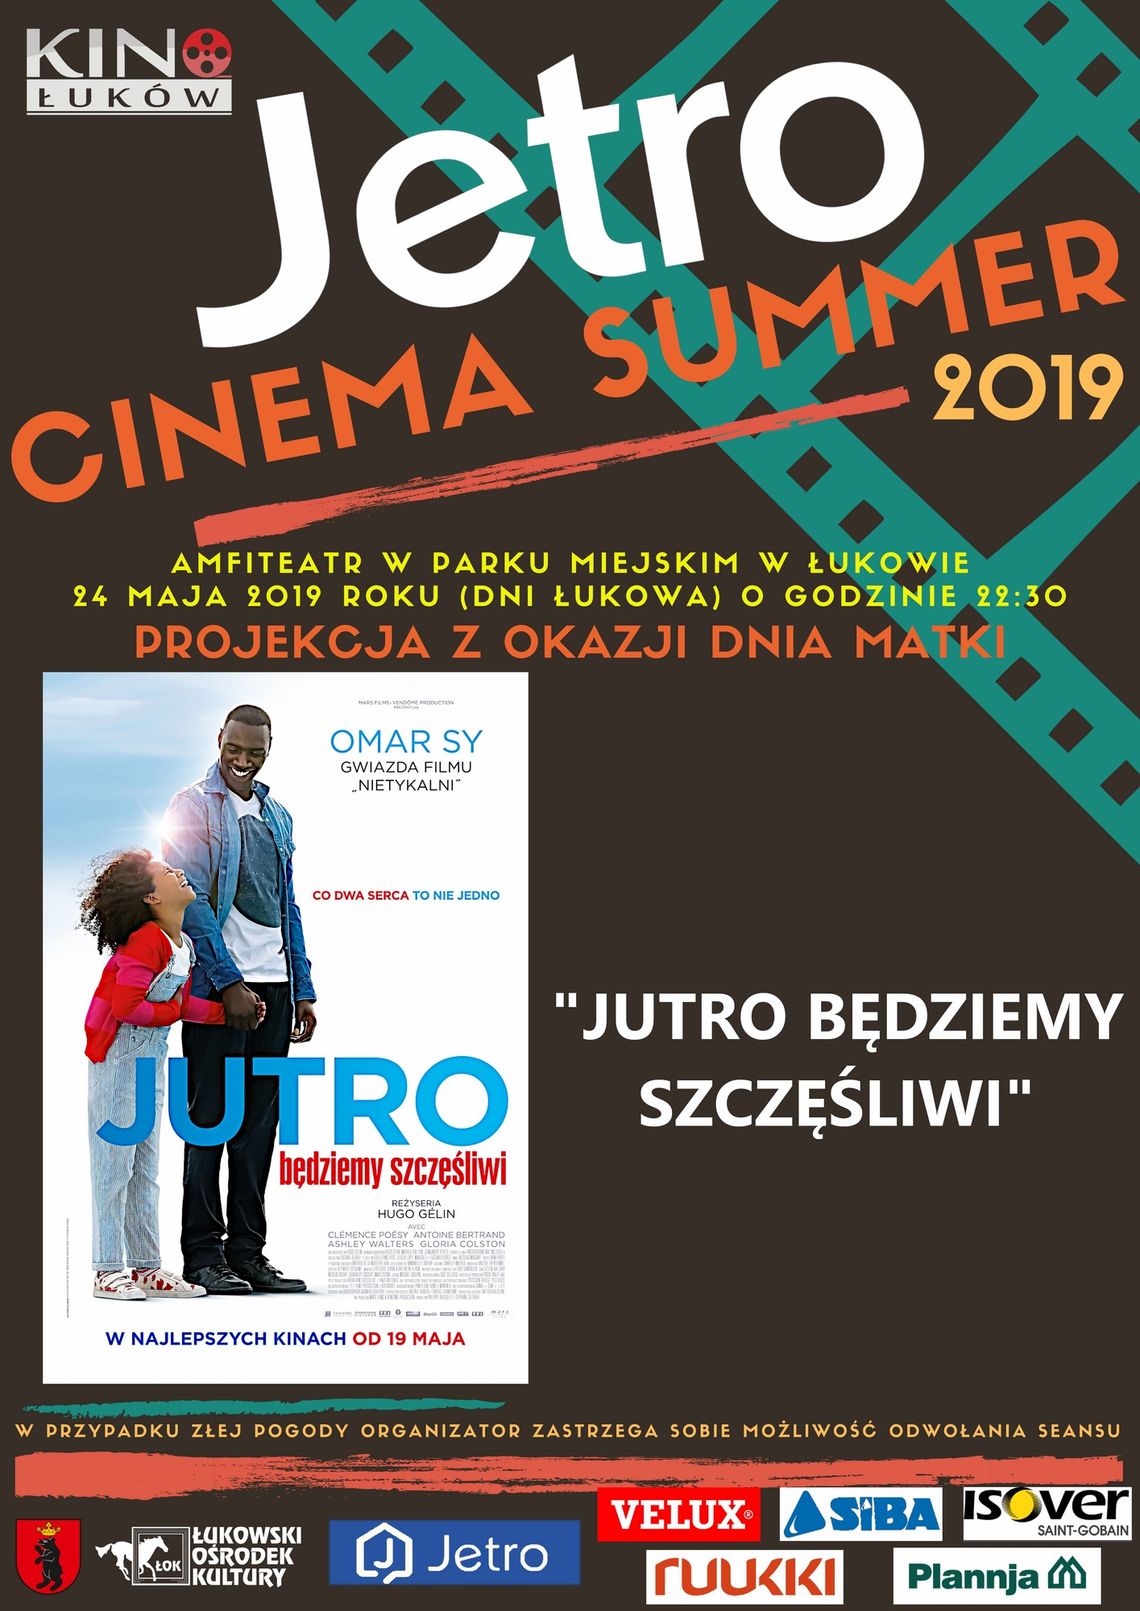 Jetro Cinema Summer 2019 "Jutro będziemy szczęśliwi" /24 maja 2019